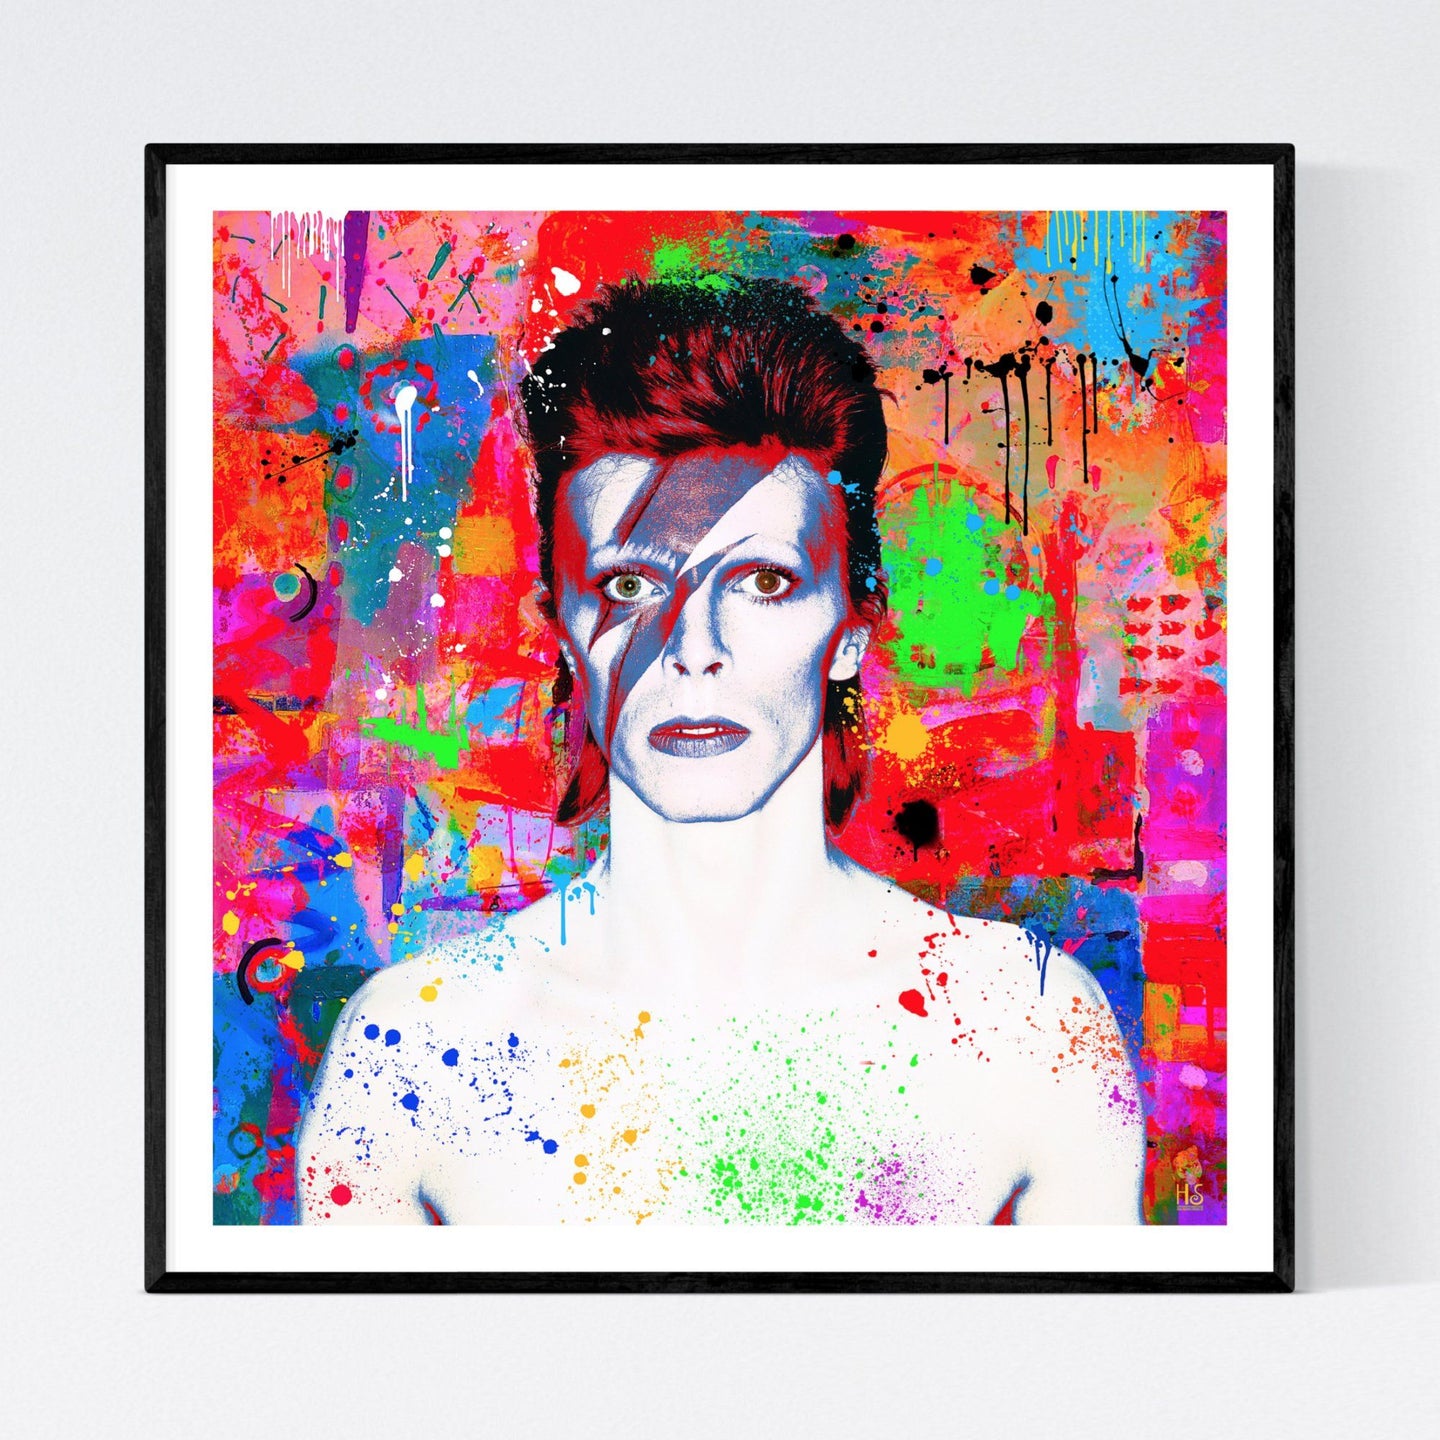 Ziggy - original og moderne pop art kunst, der viser et portræt af David Bowie a la Ziggy Stardust med den berømte zigzag bemaling i hovedet. Portrættet er på en meget kulørfyldt abstrakt baggund og er fyldt med malerklatter samt - stænk - af billedkunstner og pop artist Helt Sort